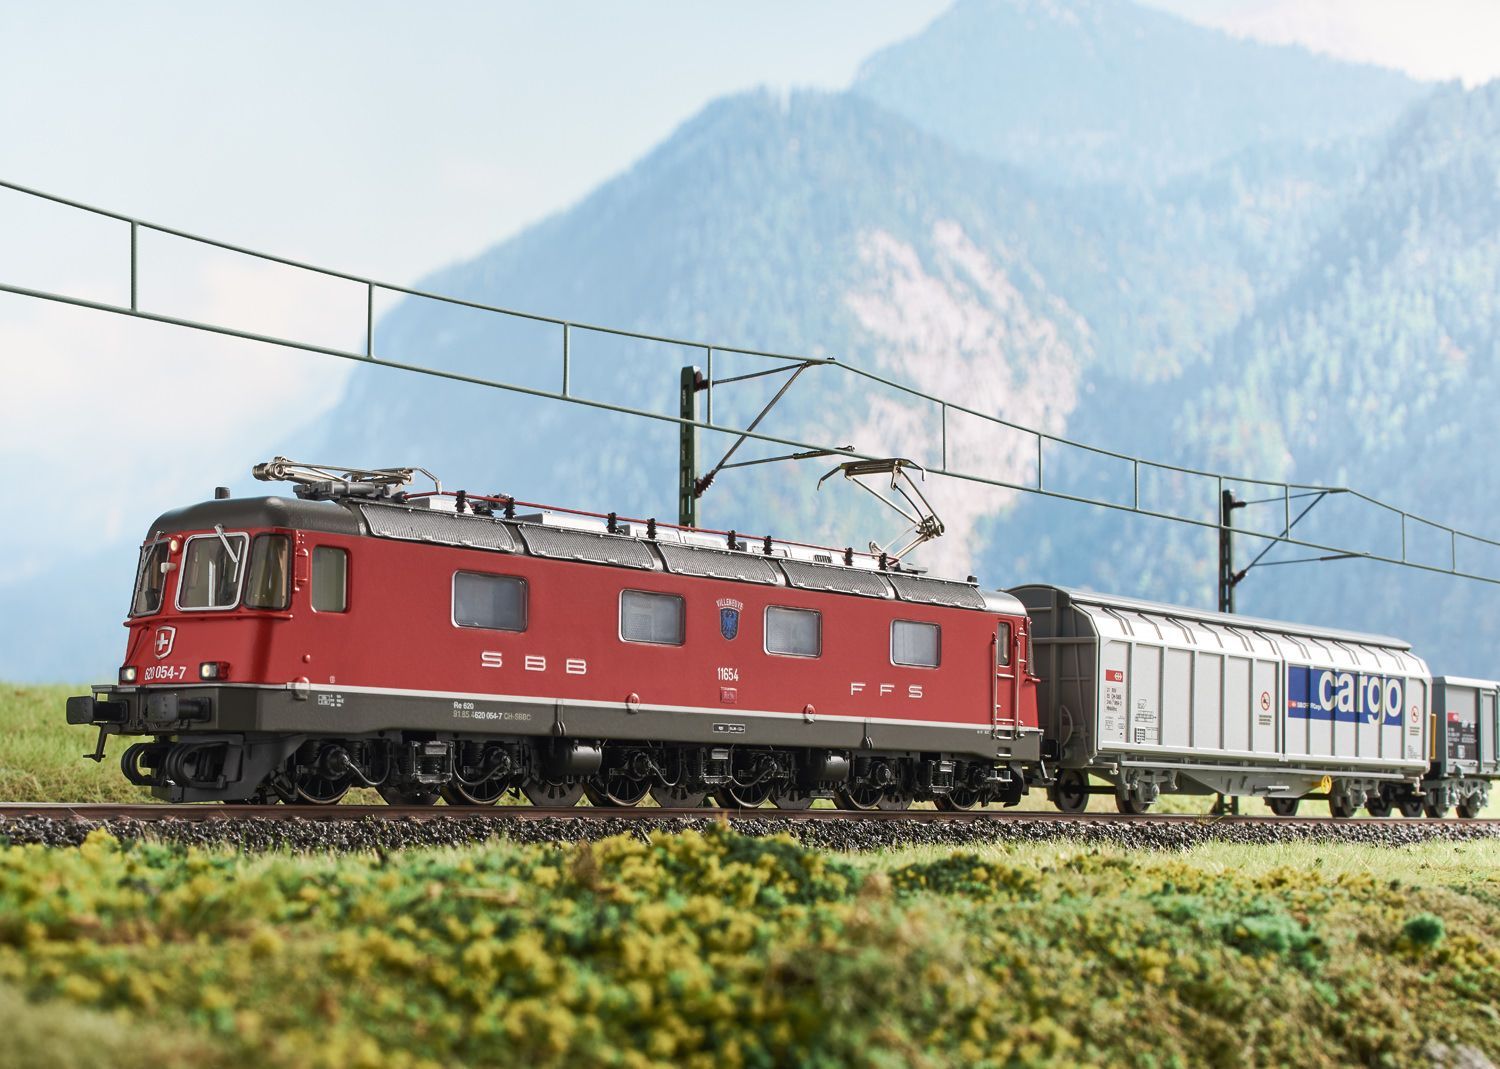 Märklin 29488 - Startpackung Schweizer Güterzug E-Lok RE 6/6 SBB Ep.VI und 3 Wagen H0/WS Sound